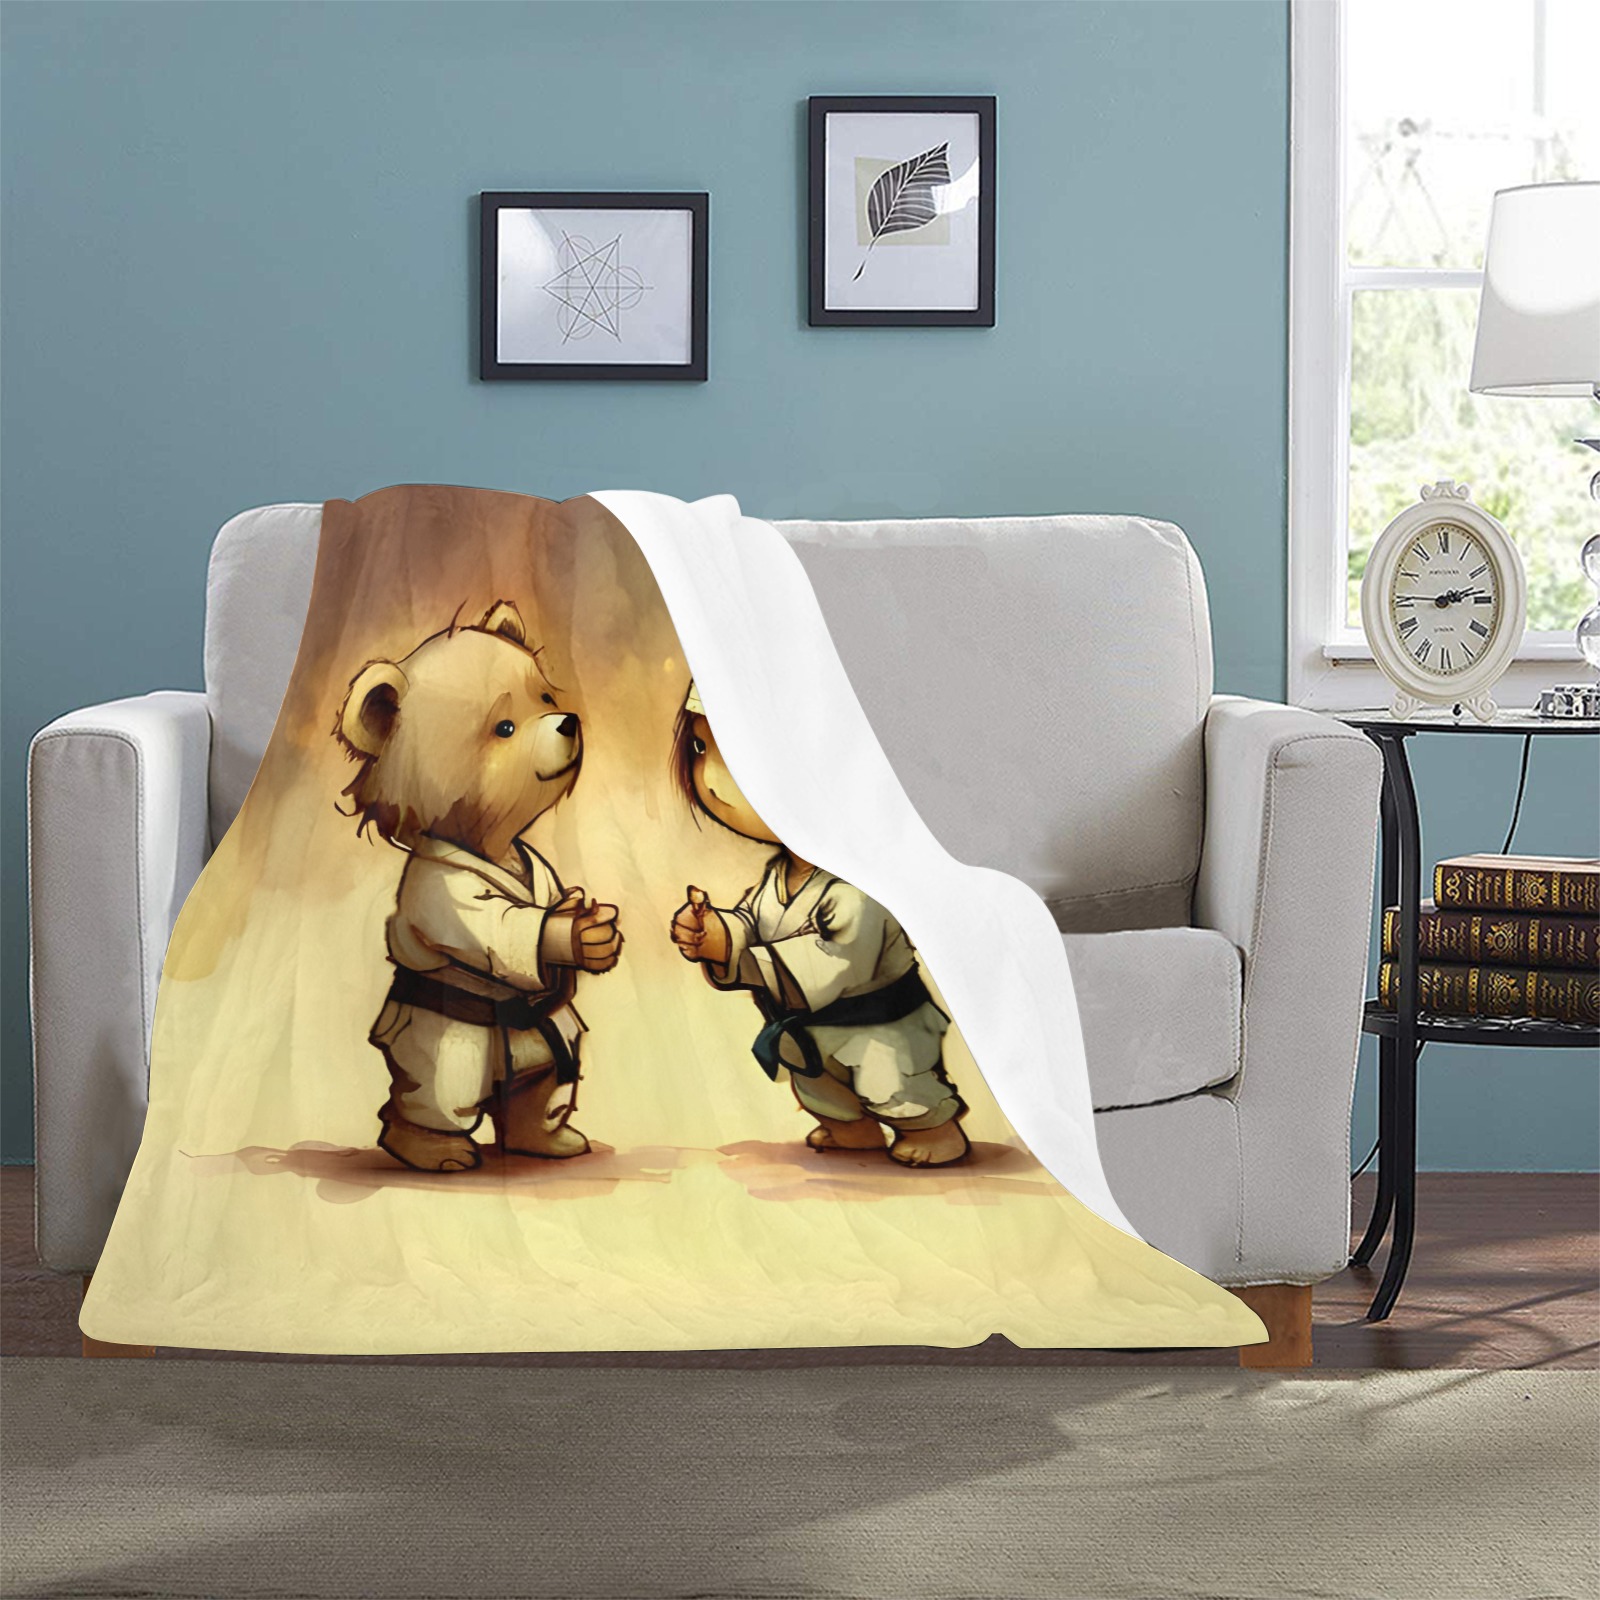 Little Bears 5 Ultra-Soft Micro Fleece Blanket 32"x48"